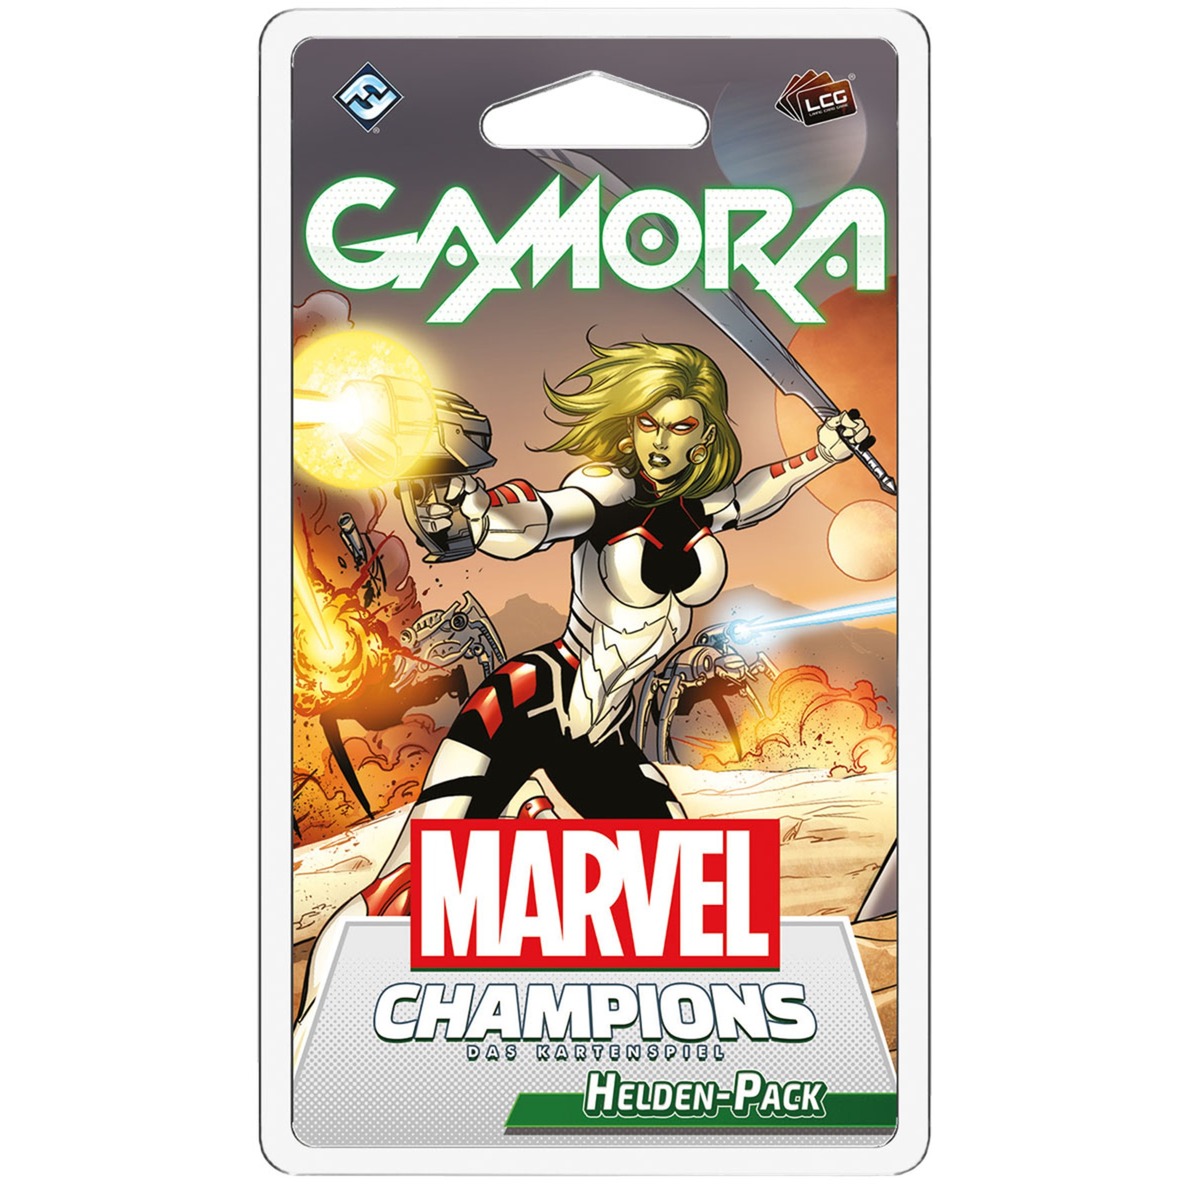 Image of Alternate - Marvel Champions: Das Kartenspiel - Gamora online einkaufen bei Alternate